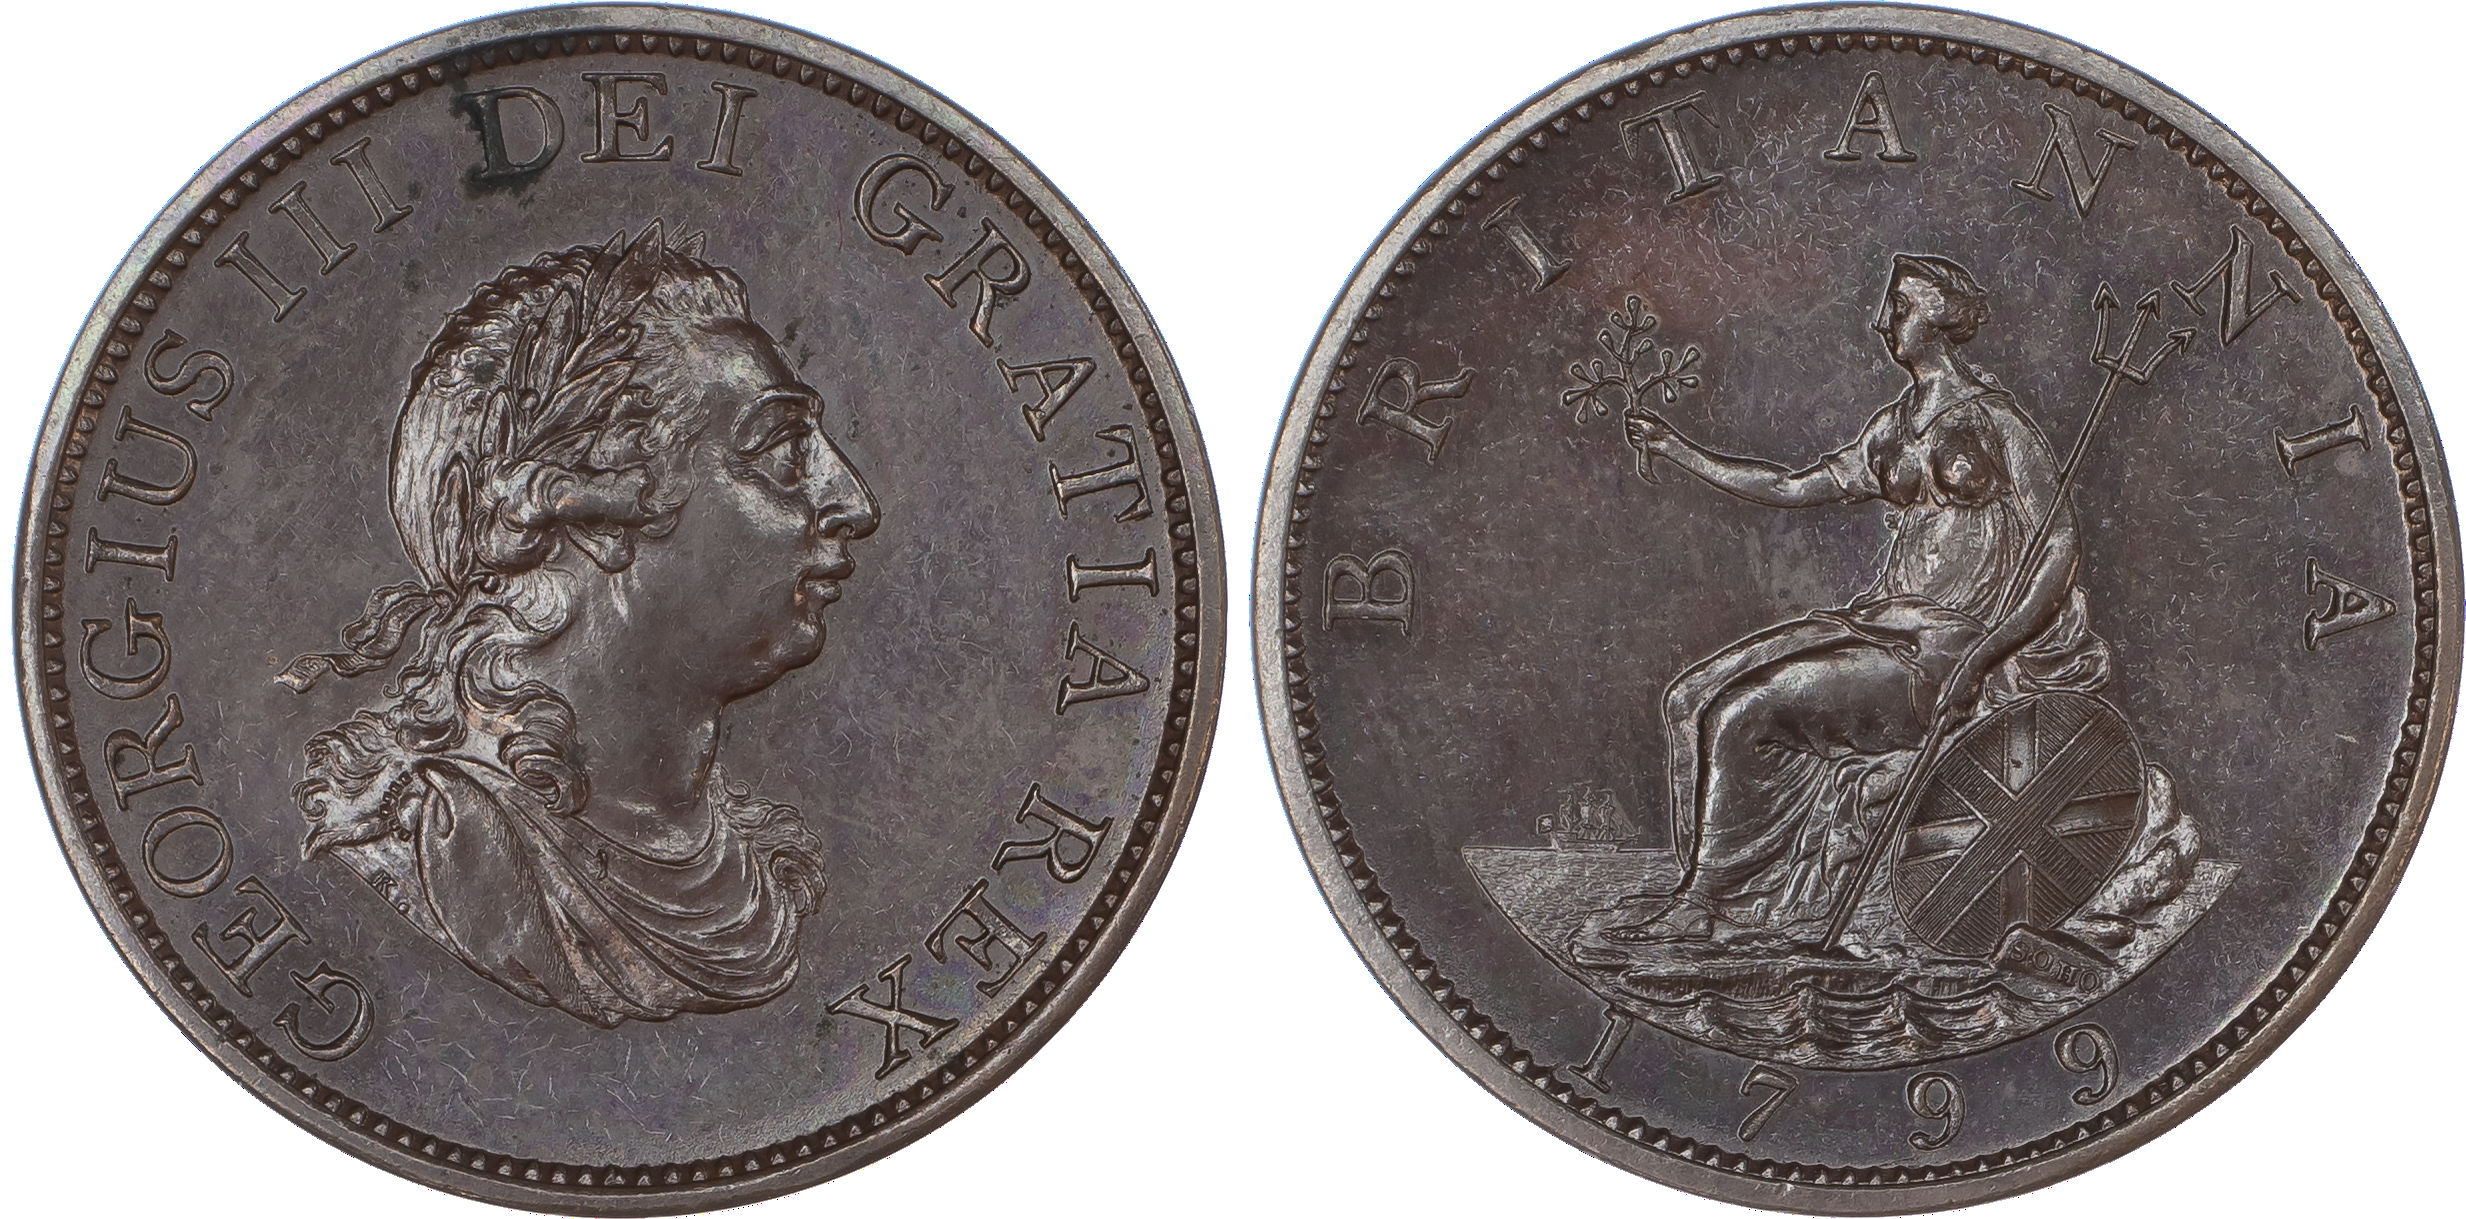 George III, Bronzed Proof Halfpenny, 1799